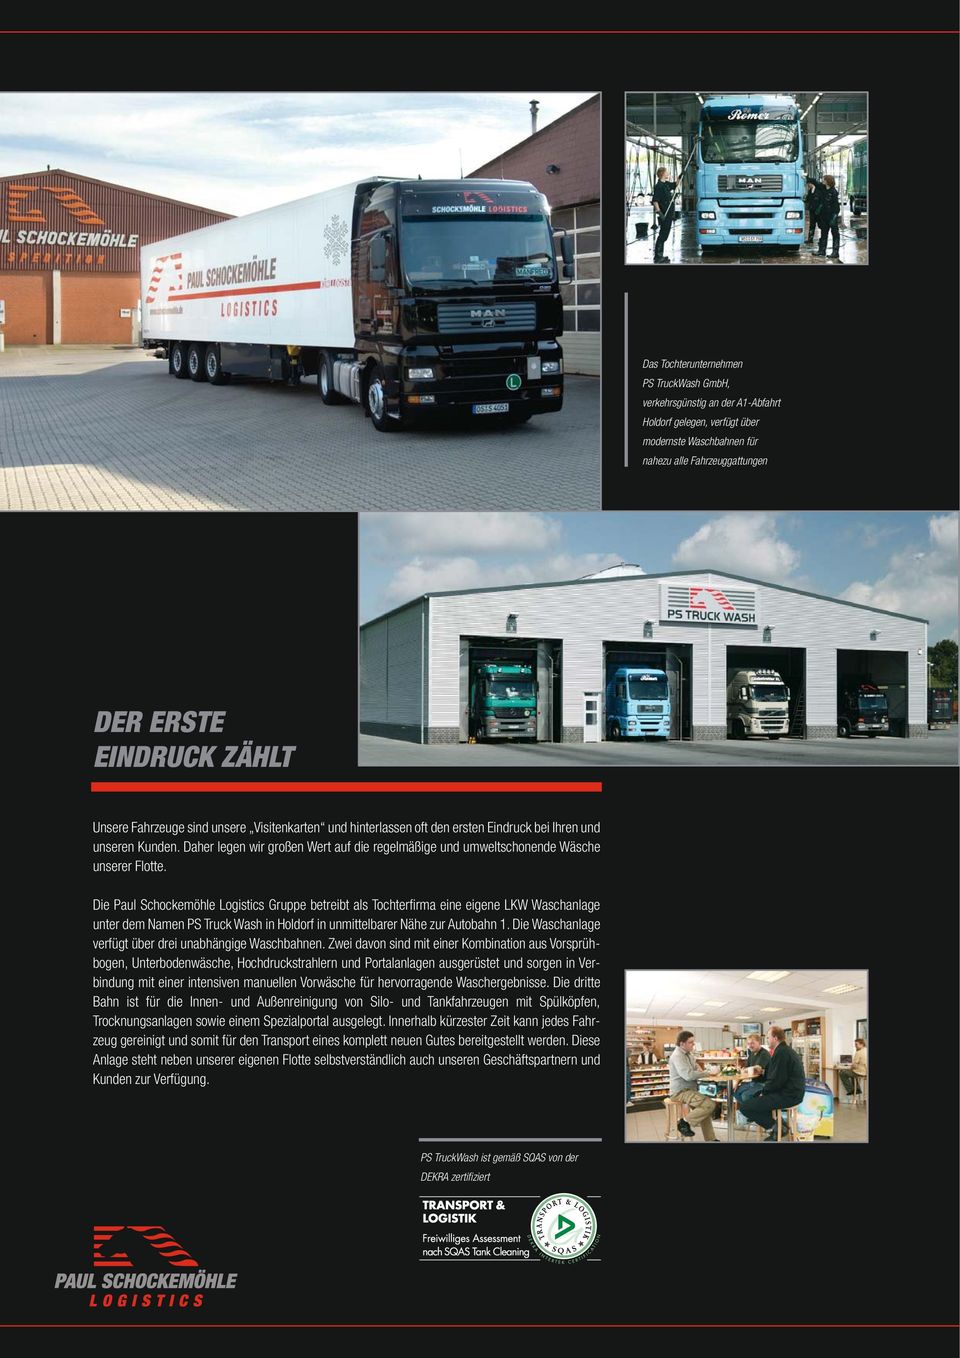 Die Paul Schockemöhle Logistics Gruppe betreibt als Tochterfirma eine eigene LKW Waschanlage unter dem Namen PS Truck Wash in Holdorf in unmittelbarer Nähe zur Autobahn 1.